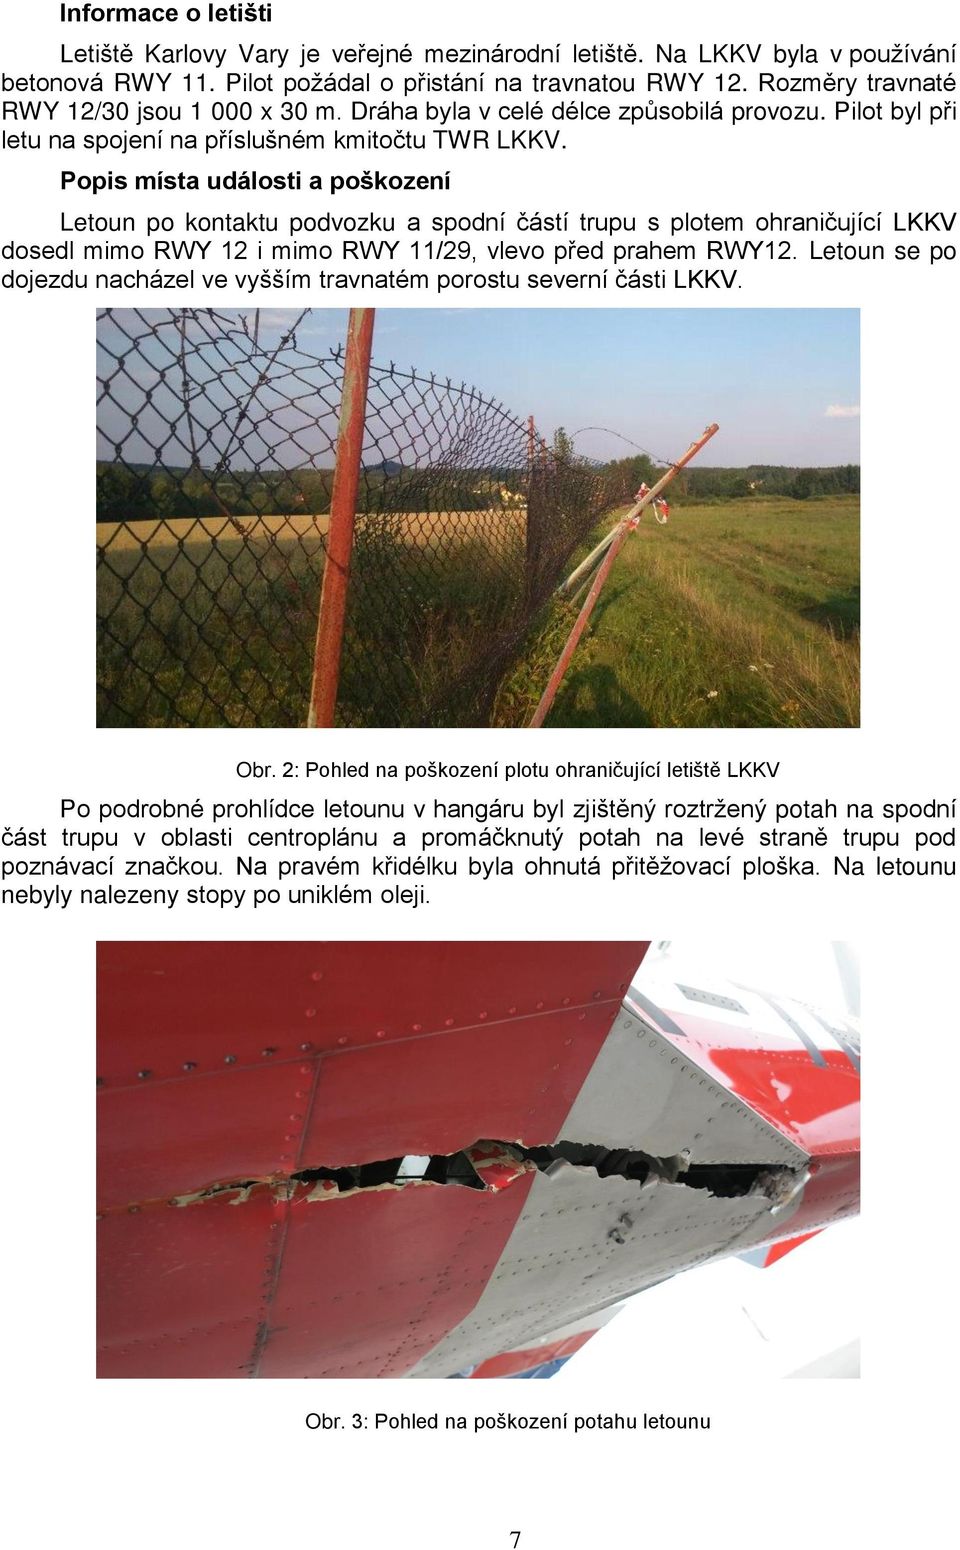 Popis místa události a poškození Letoun po kontaktu podvozku a spodní částí trupu s plotem ohraničující LKKV dosedl mimo RWY 12 i mimo RWY 11/29, vlevo před prahem RWY12.